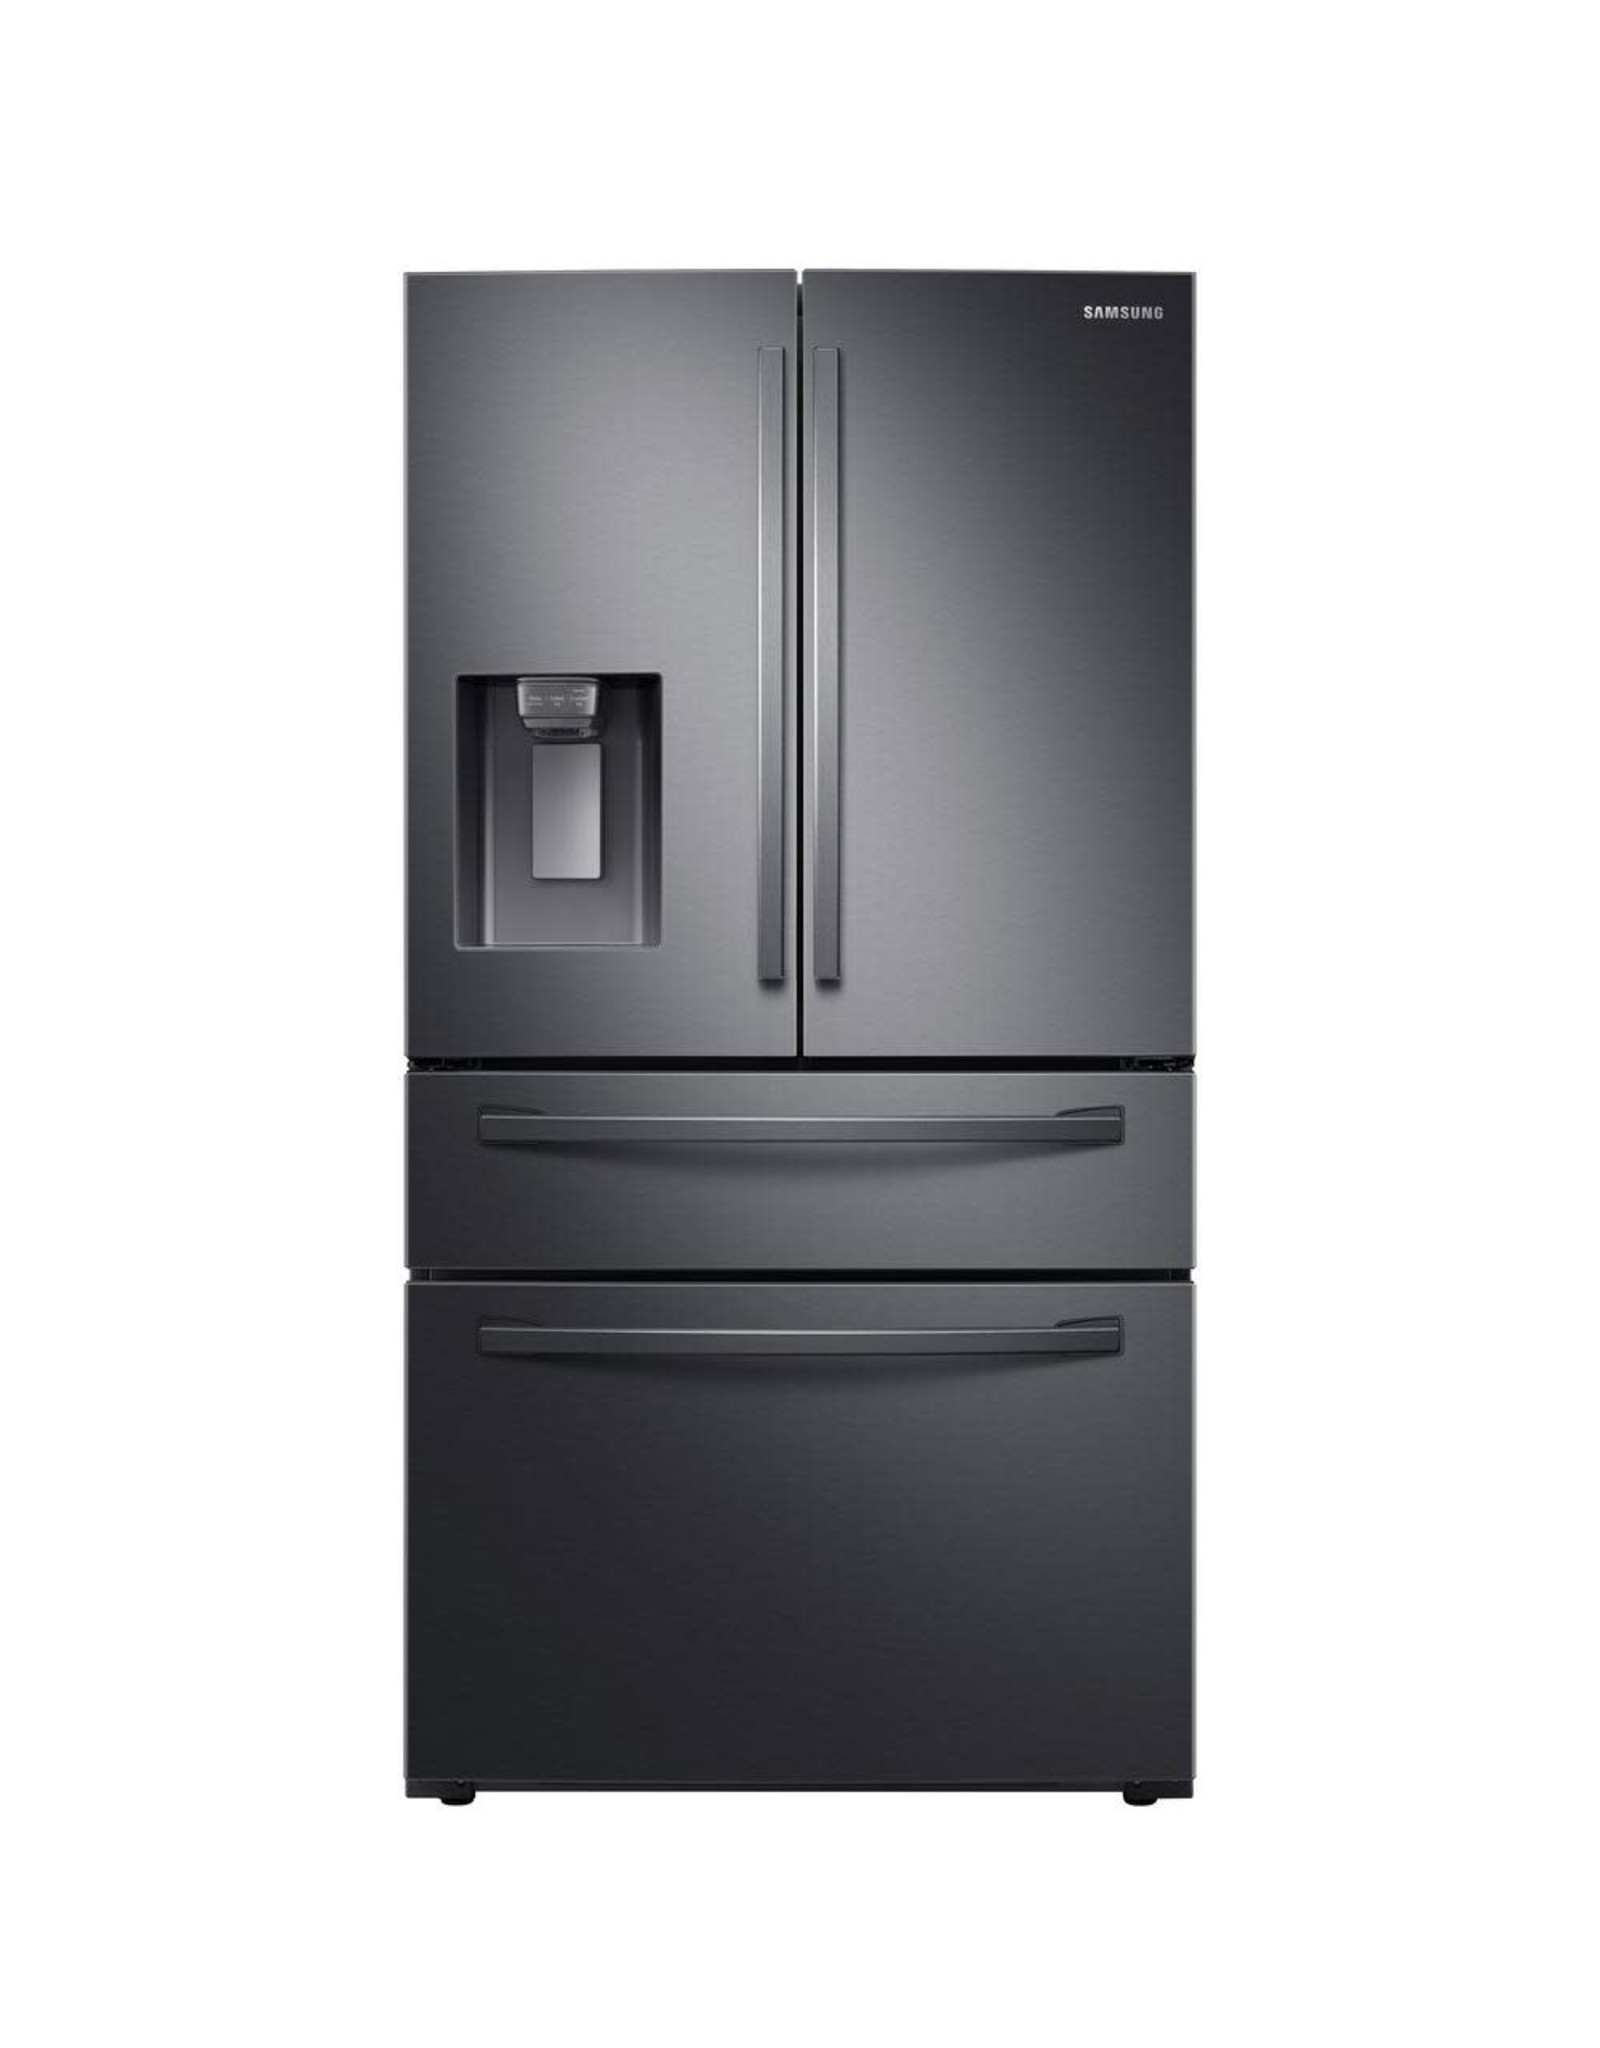 SAMSUNG NEW  Samsung 28 cu. ft. 4-Door French Door Refrigerator in Fingerprint Resistant Black Stainless